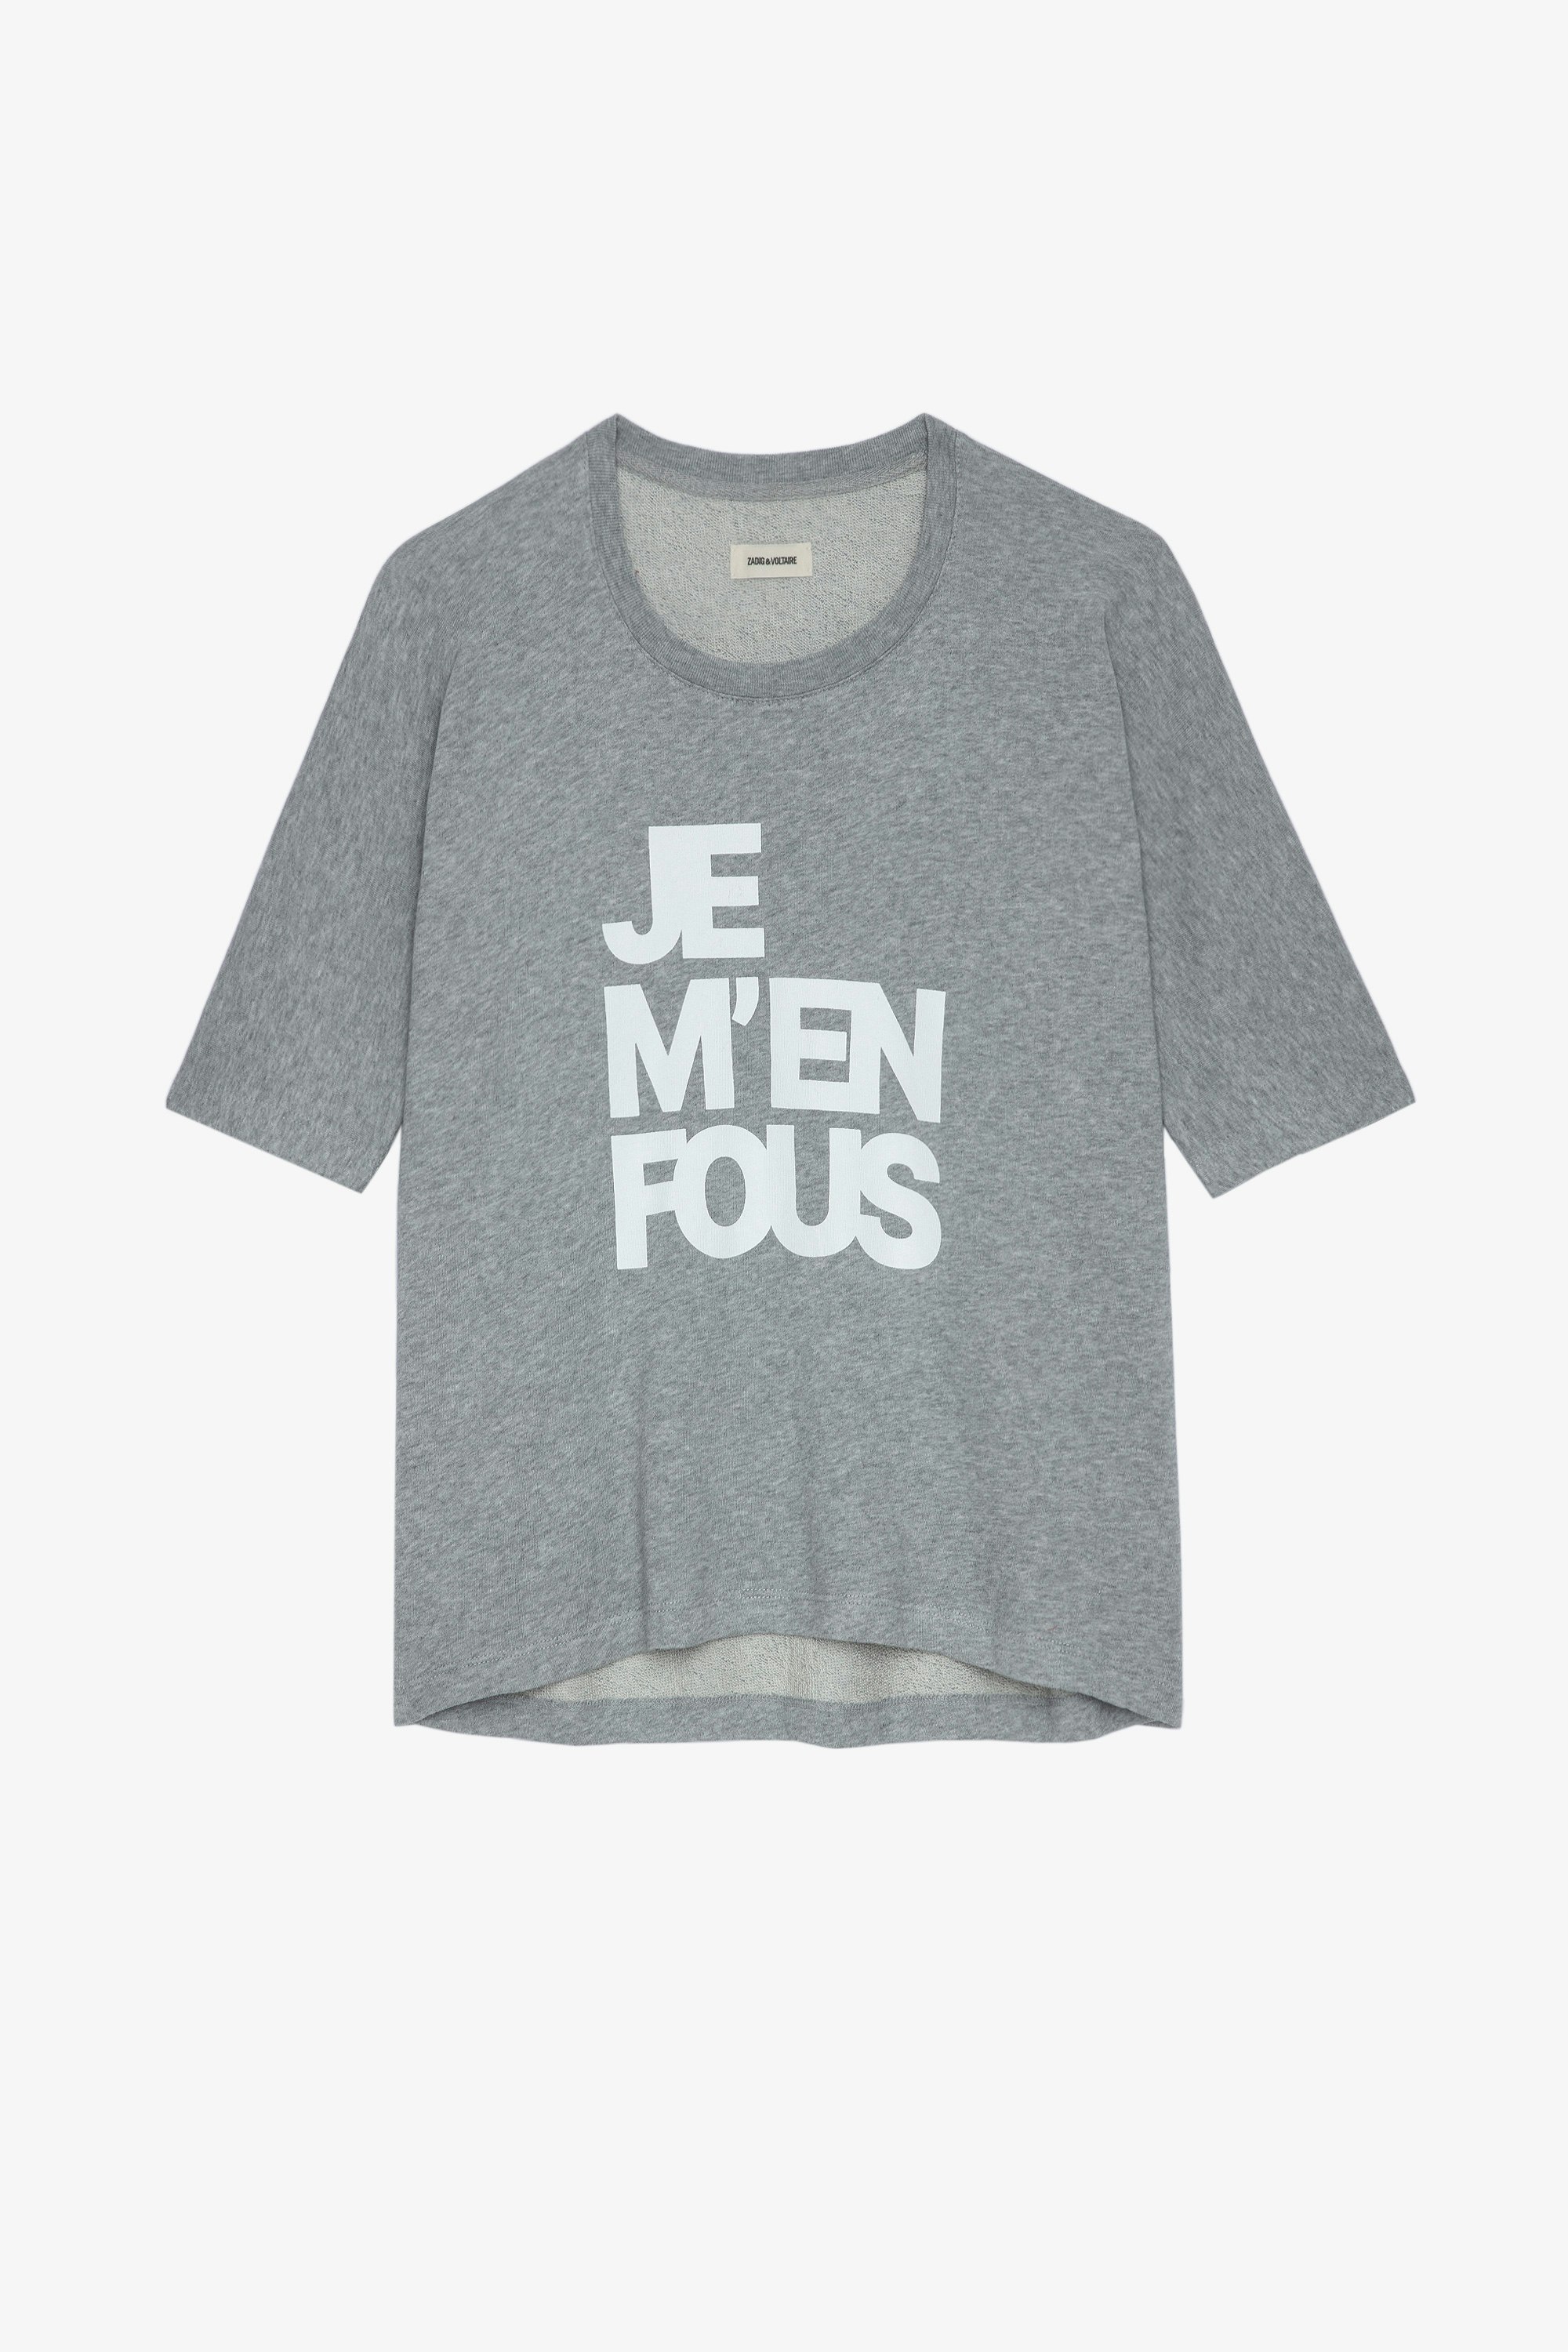 Portland JMF スウェット Women’s grey marl cotton sweatshirt with “Je m’en fous” slogan